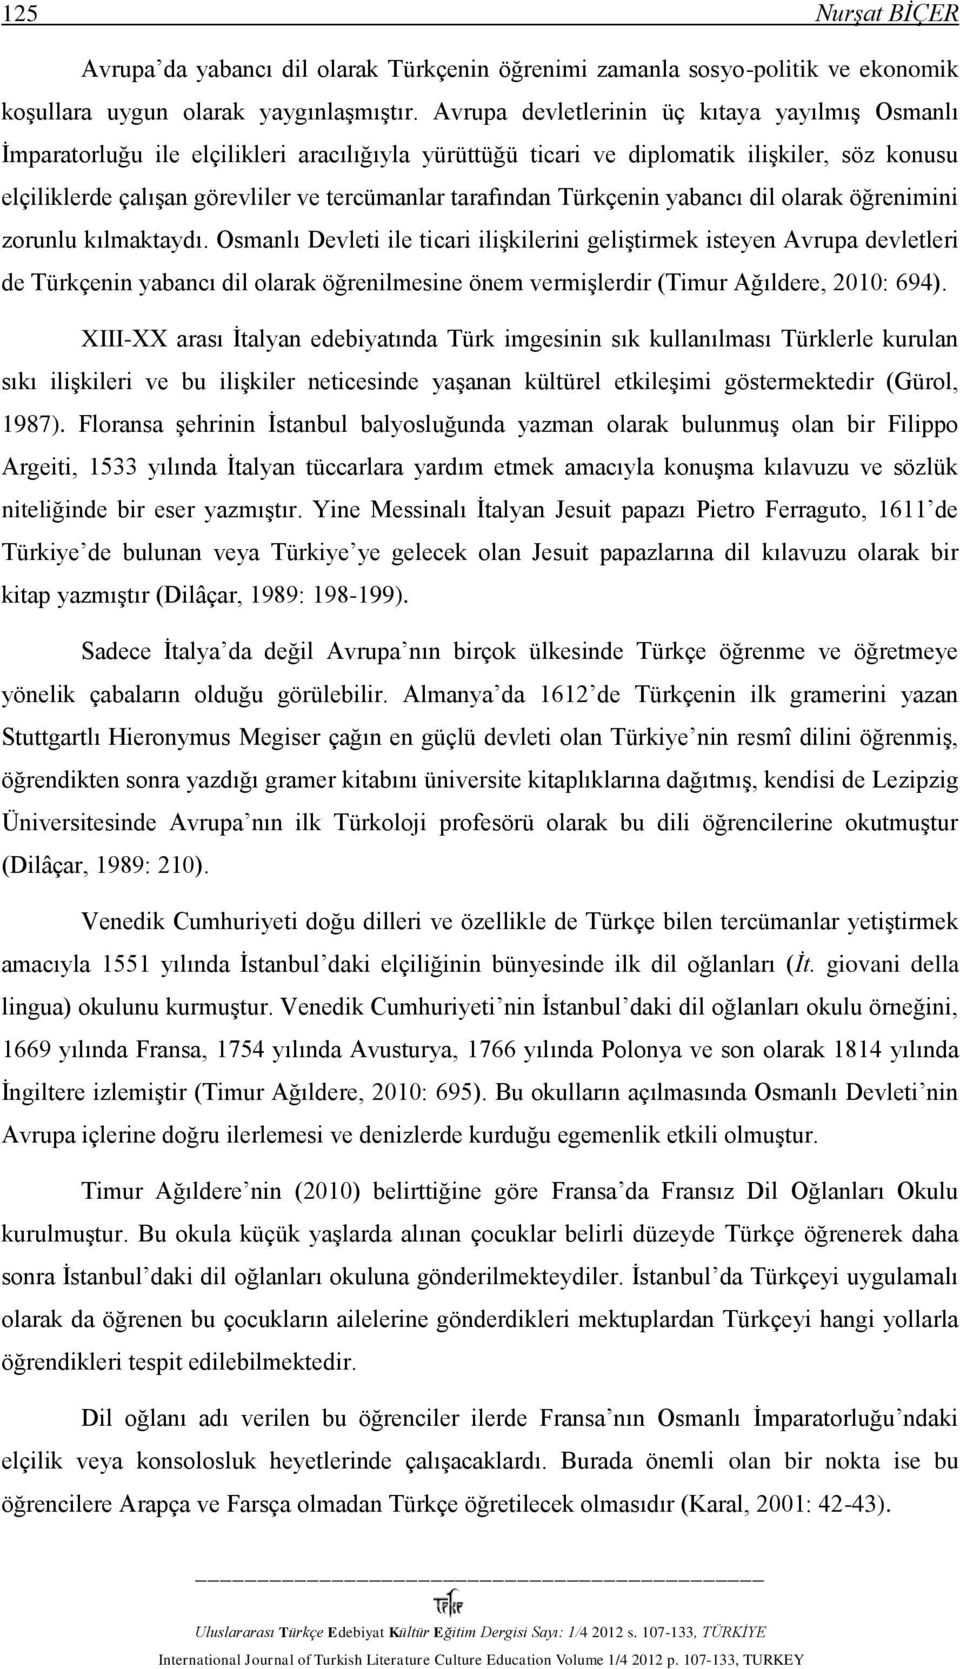 hangi devlet türkçeyi resmi dil olarak kabul etmiştir